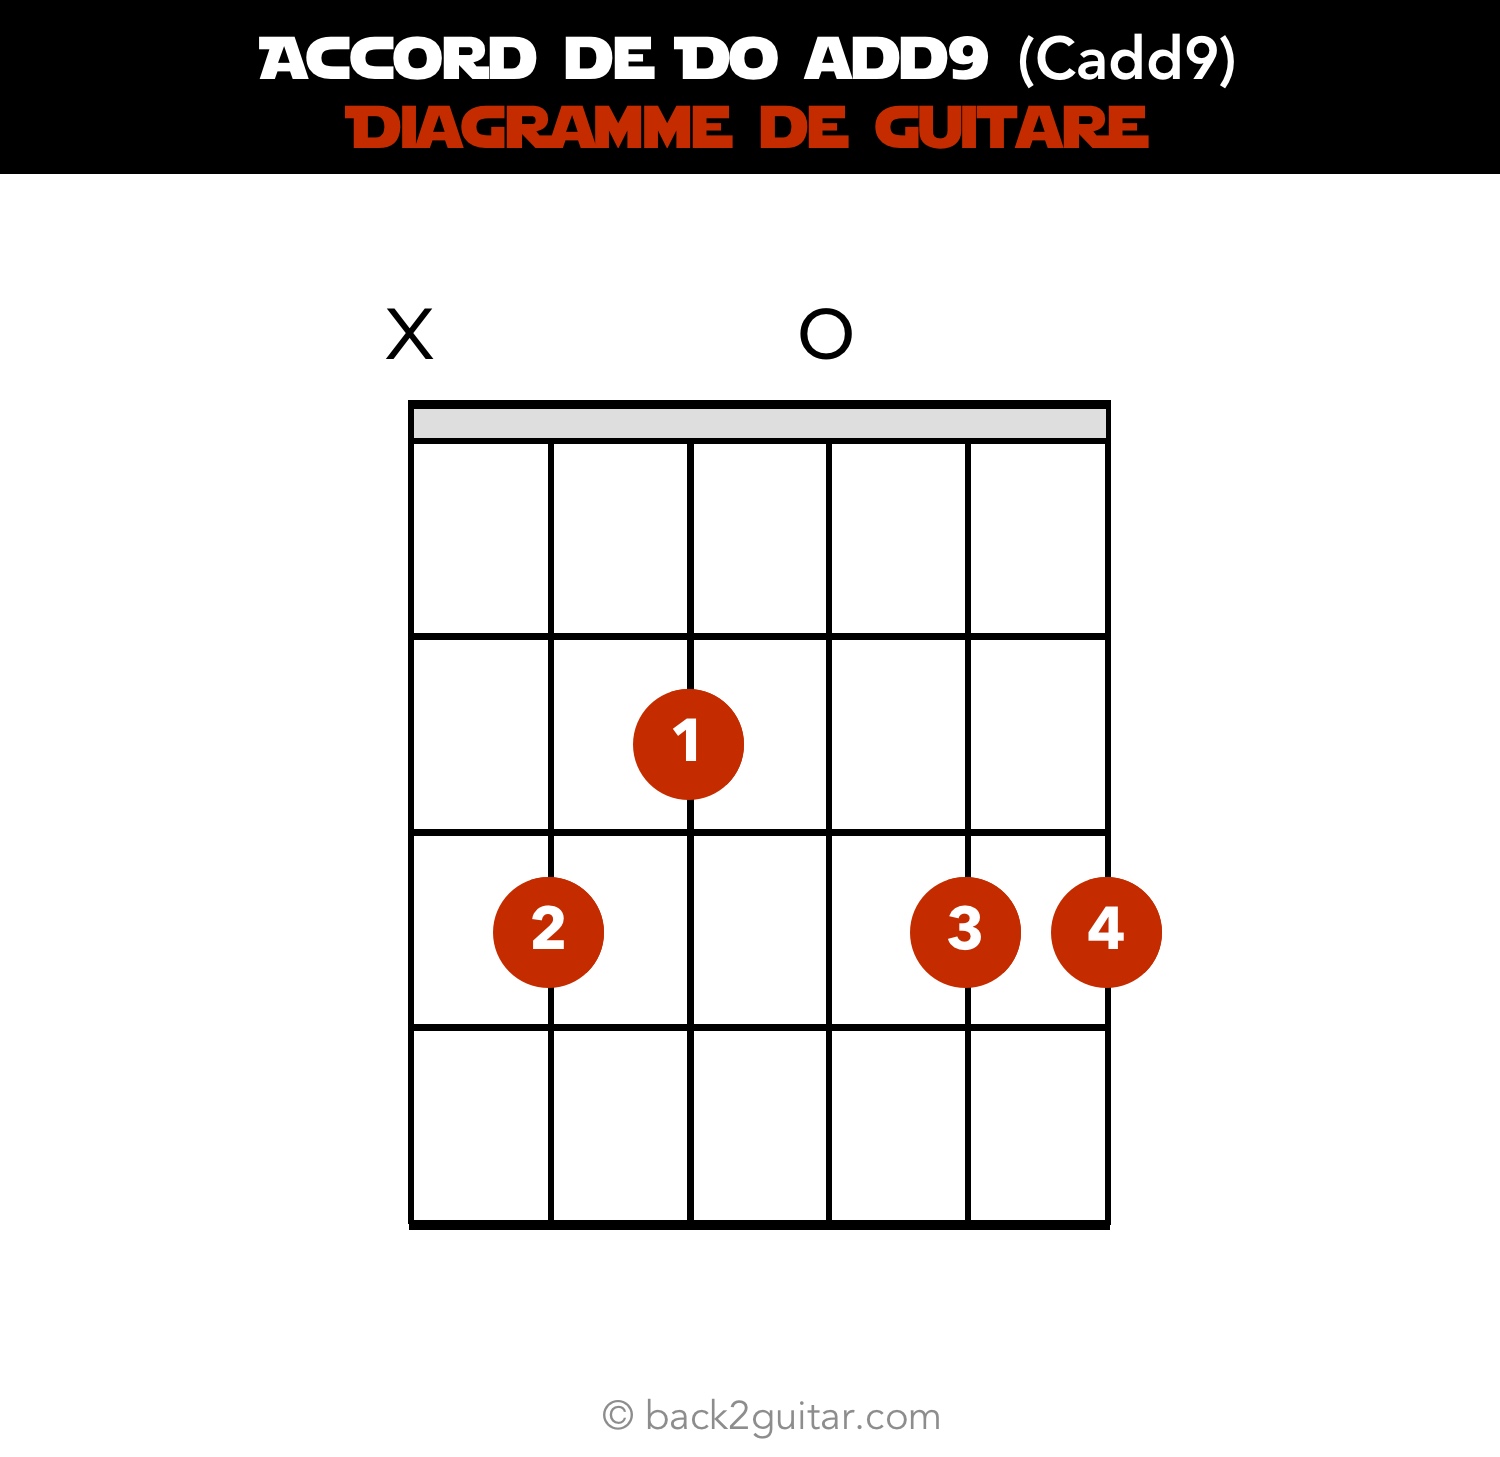 accord guitare do add9 diagramme guitare (Cadd9)